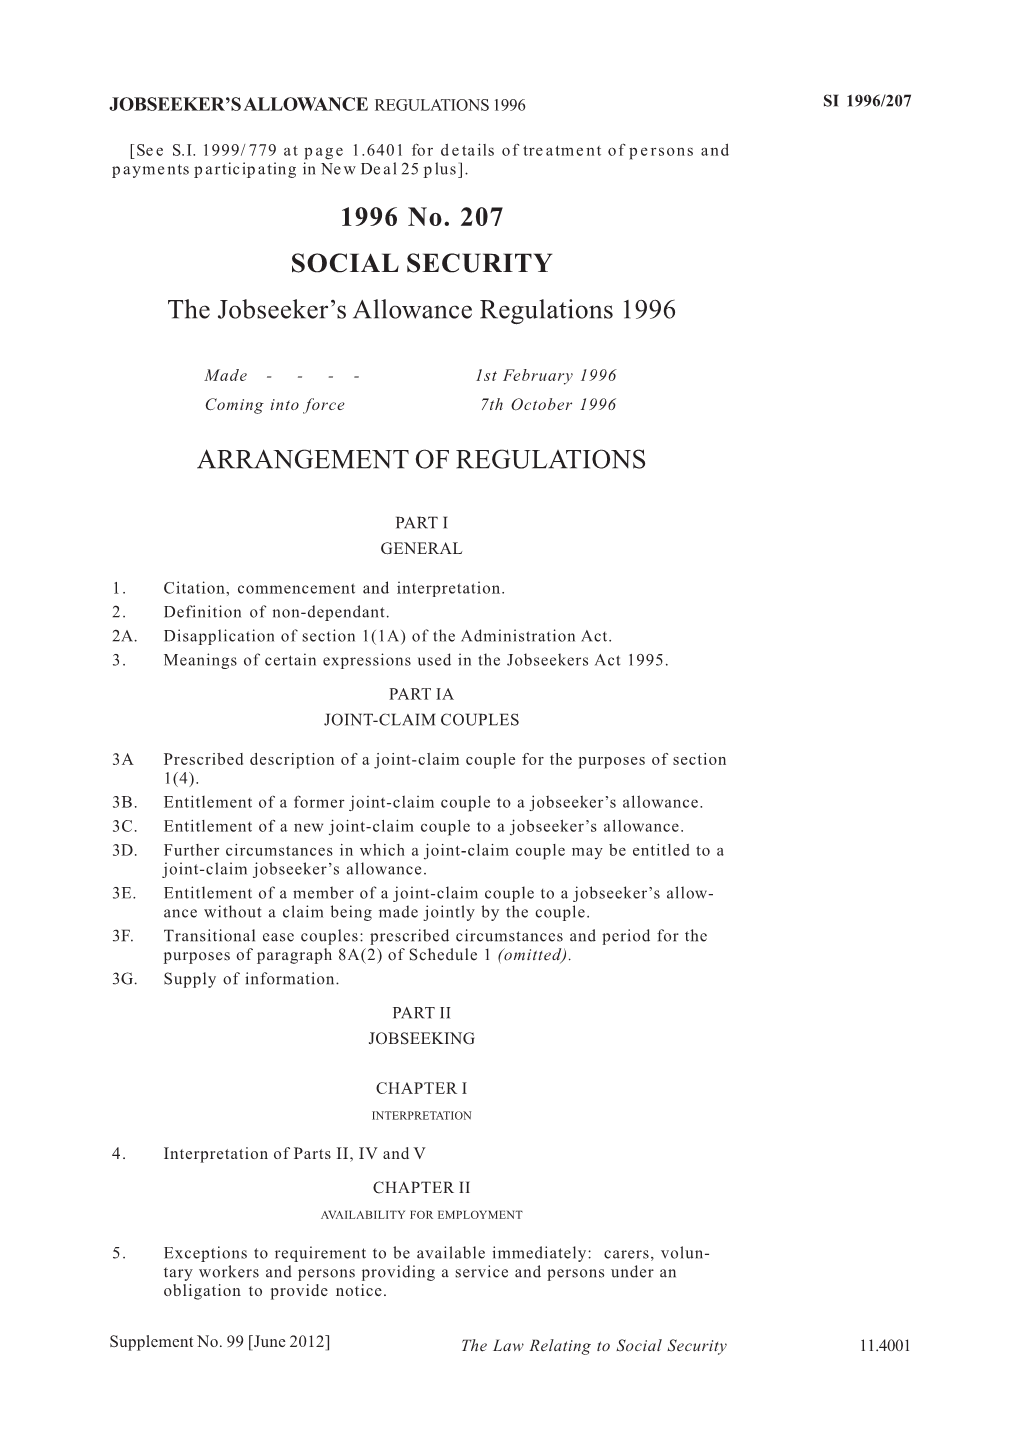 1996 No. 207 SOCIAL SECURITY the Jobseeker's Allowance